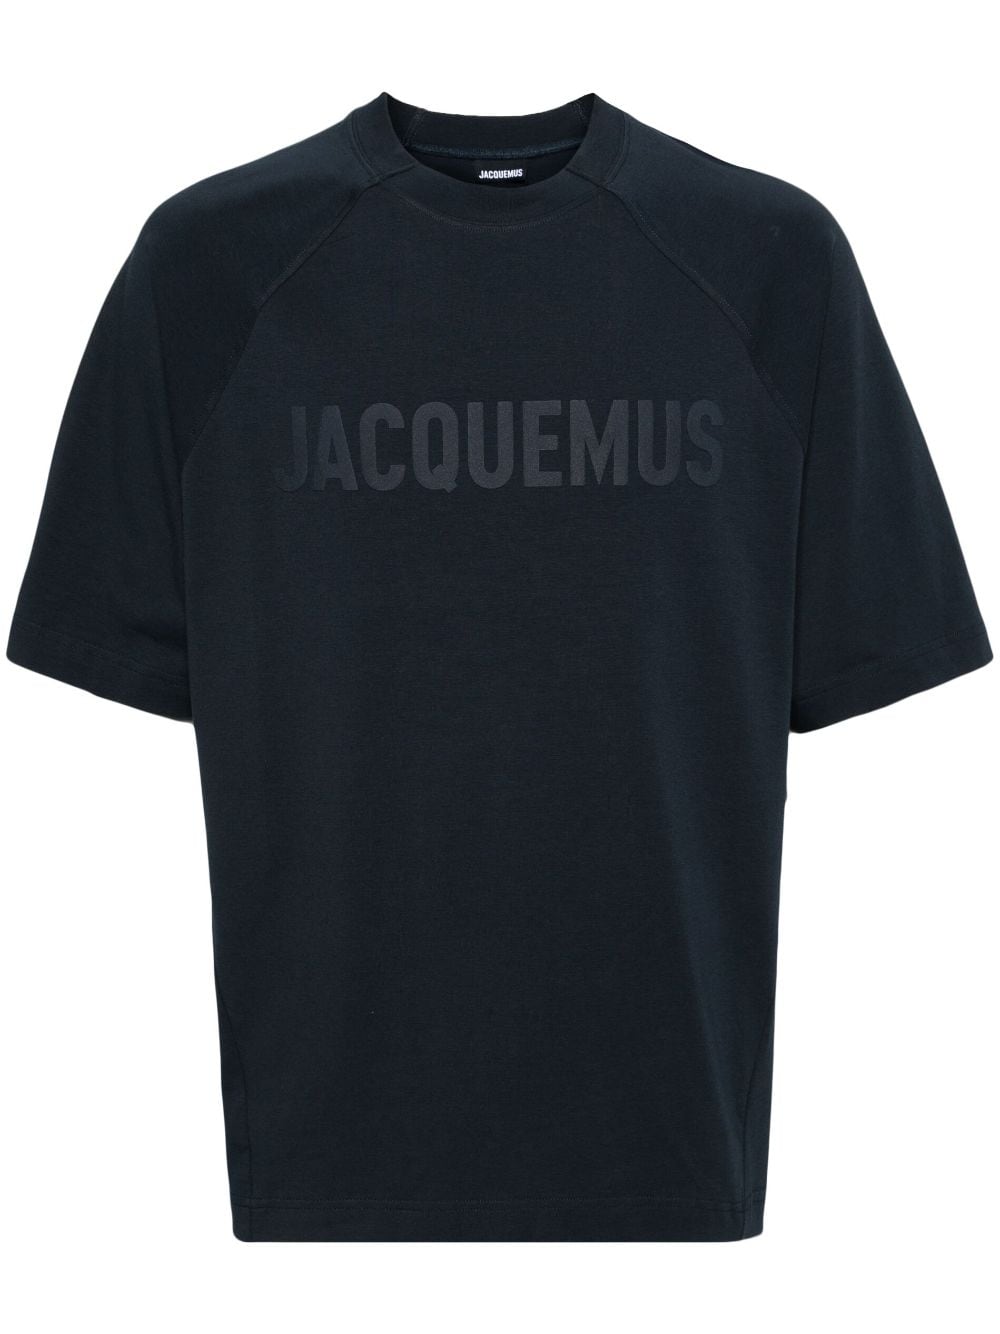 Jacquemus Le T-shirt Typo long-sleeve top - Blue von Jacquemus